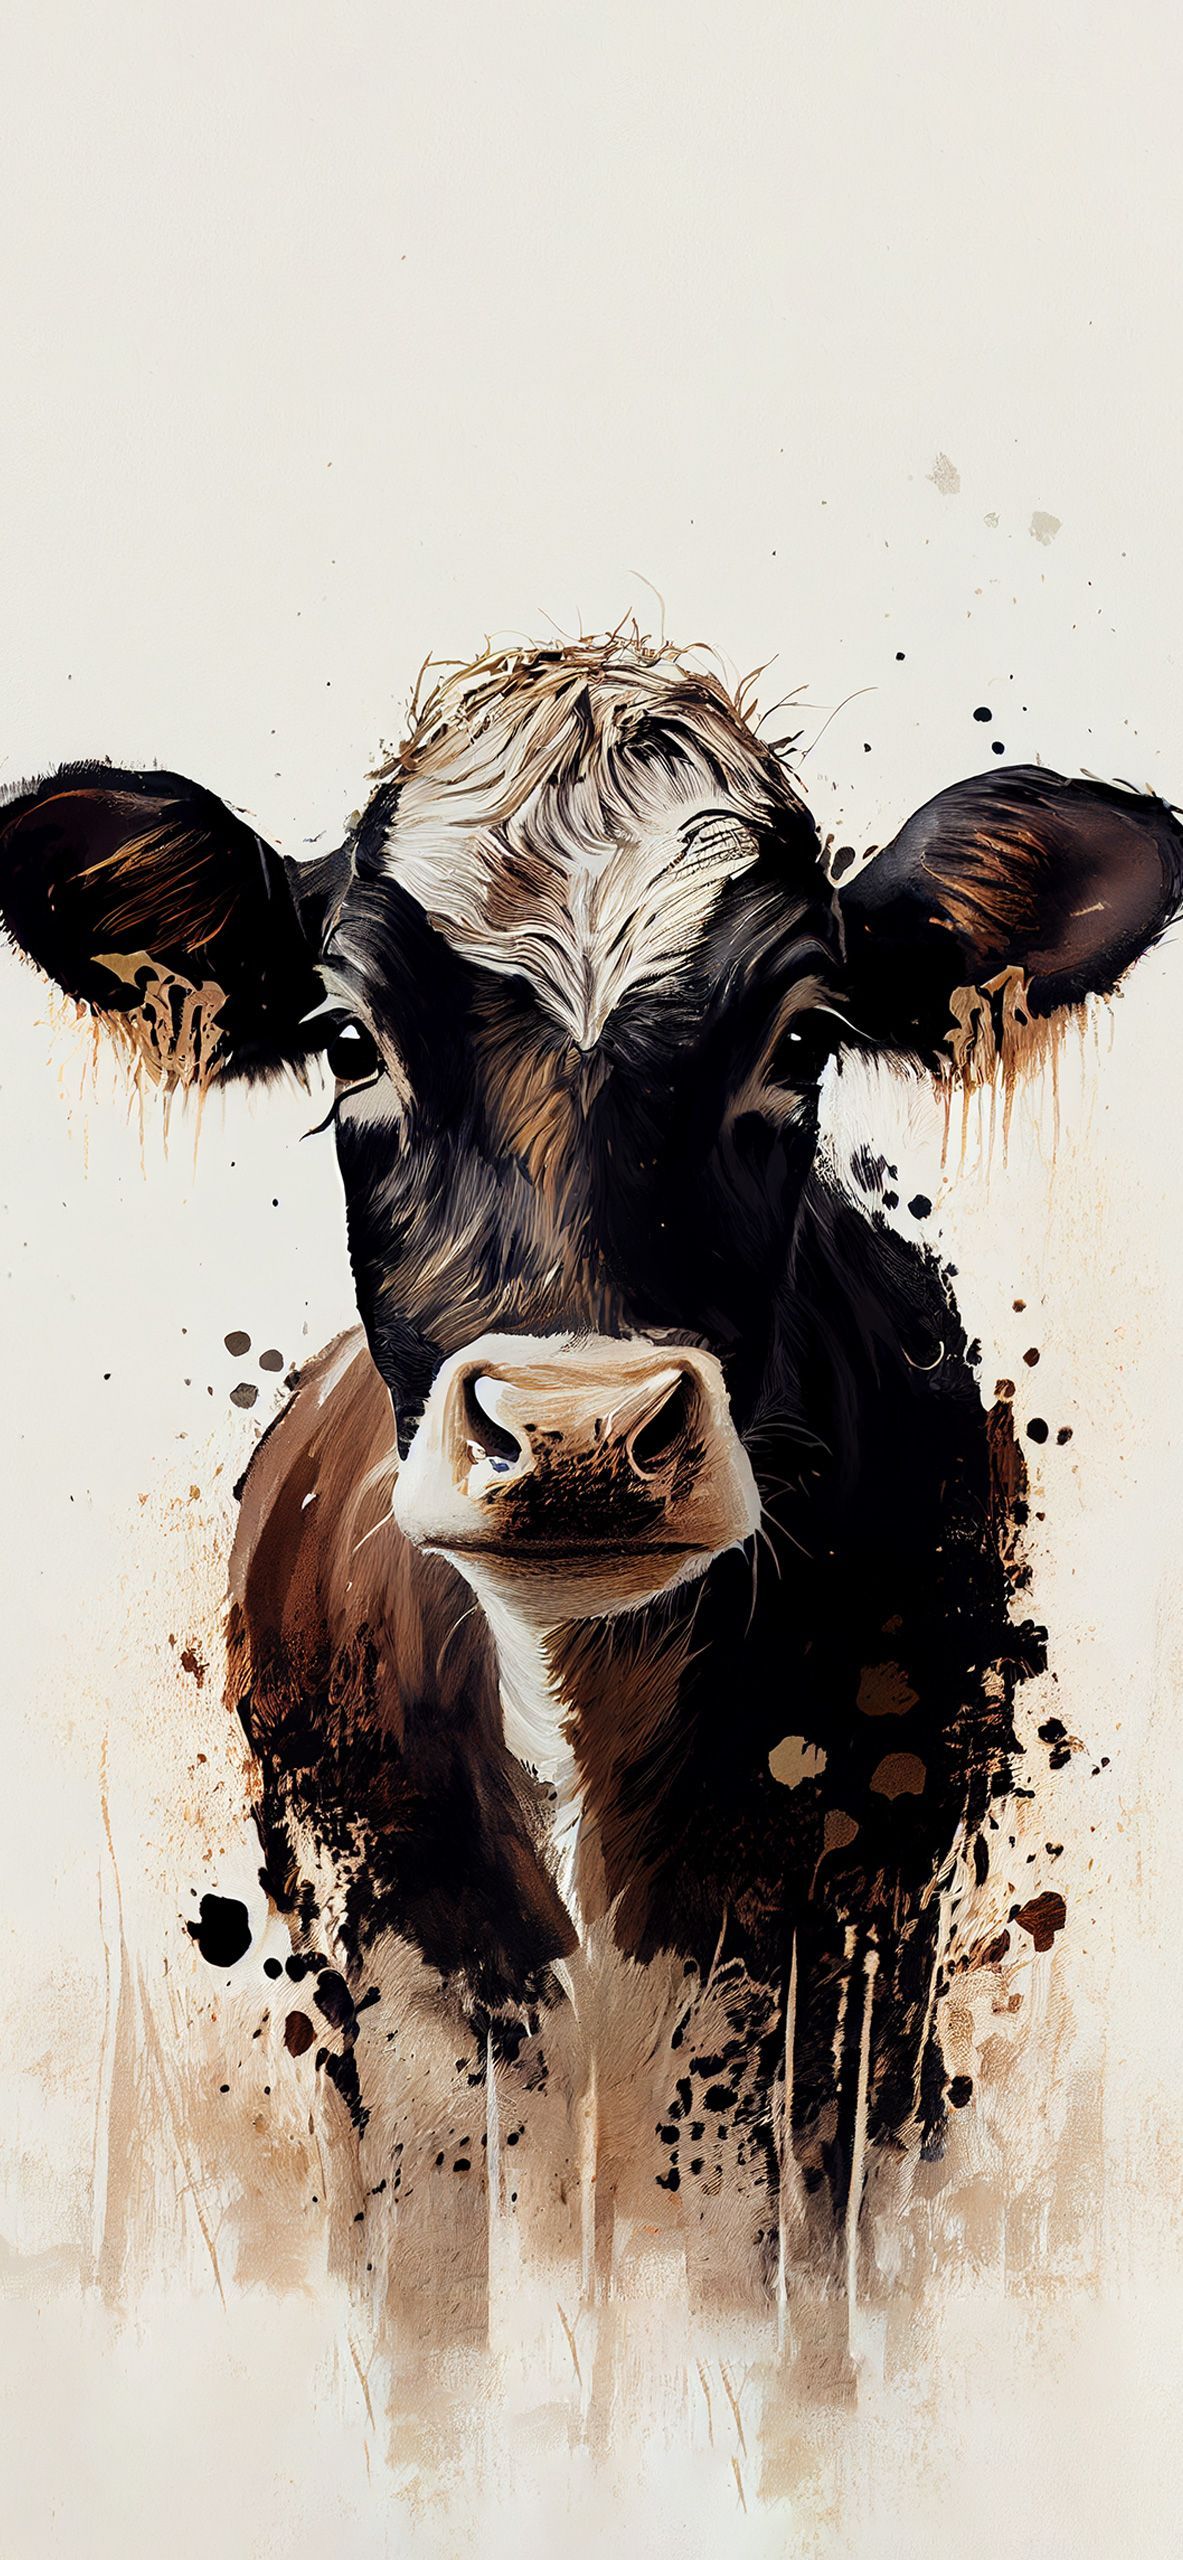 Cow Aesthetic Beige Wallpaper Cow Wallpaper iPhone. Cow wallpaper, Cow picture, Western wallpaper iphone